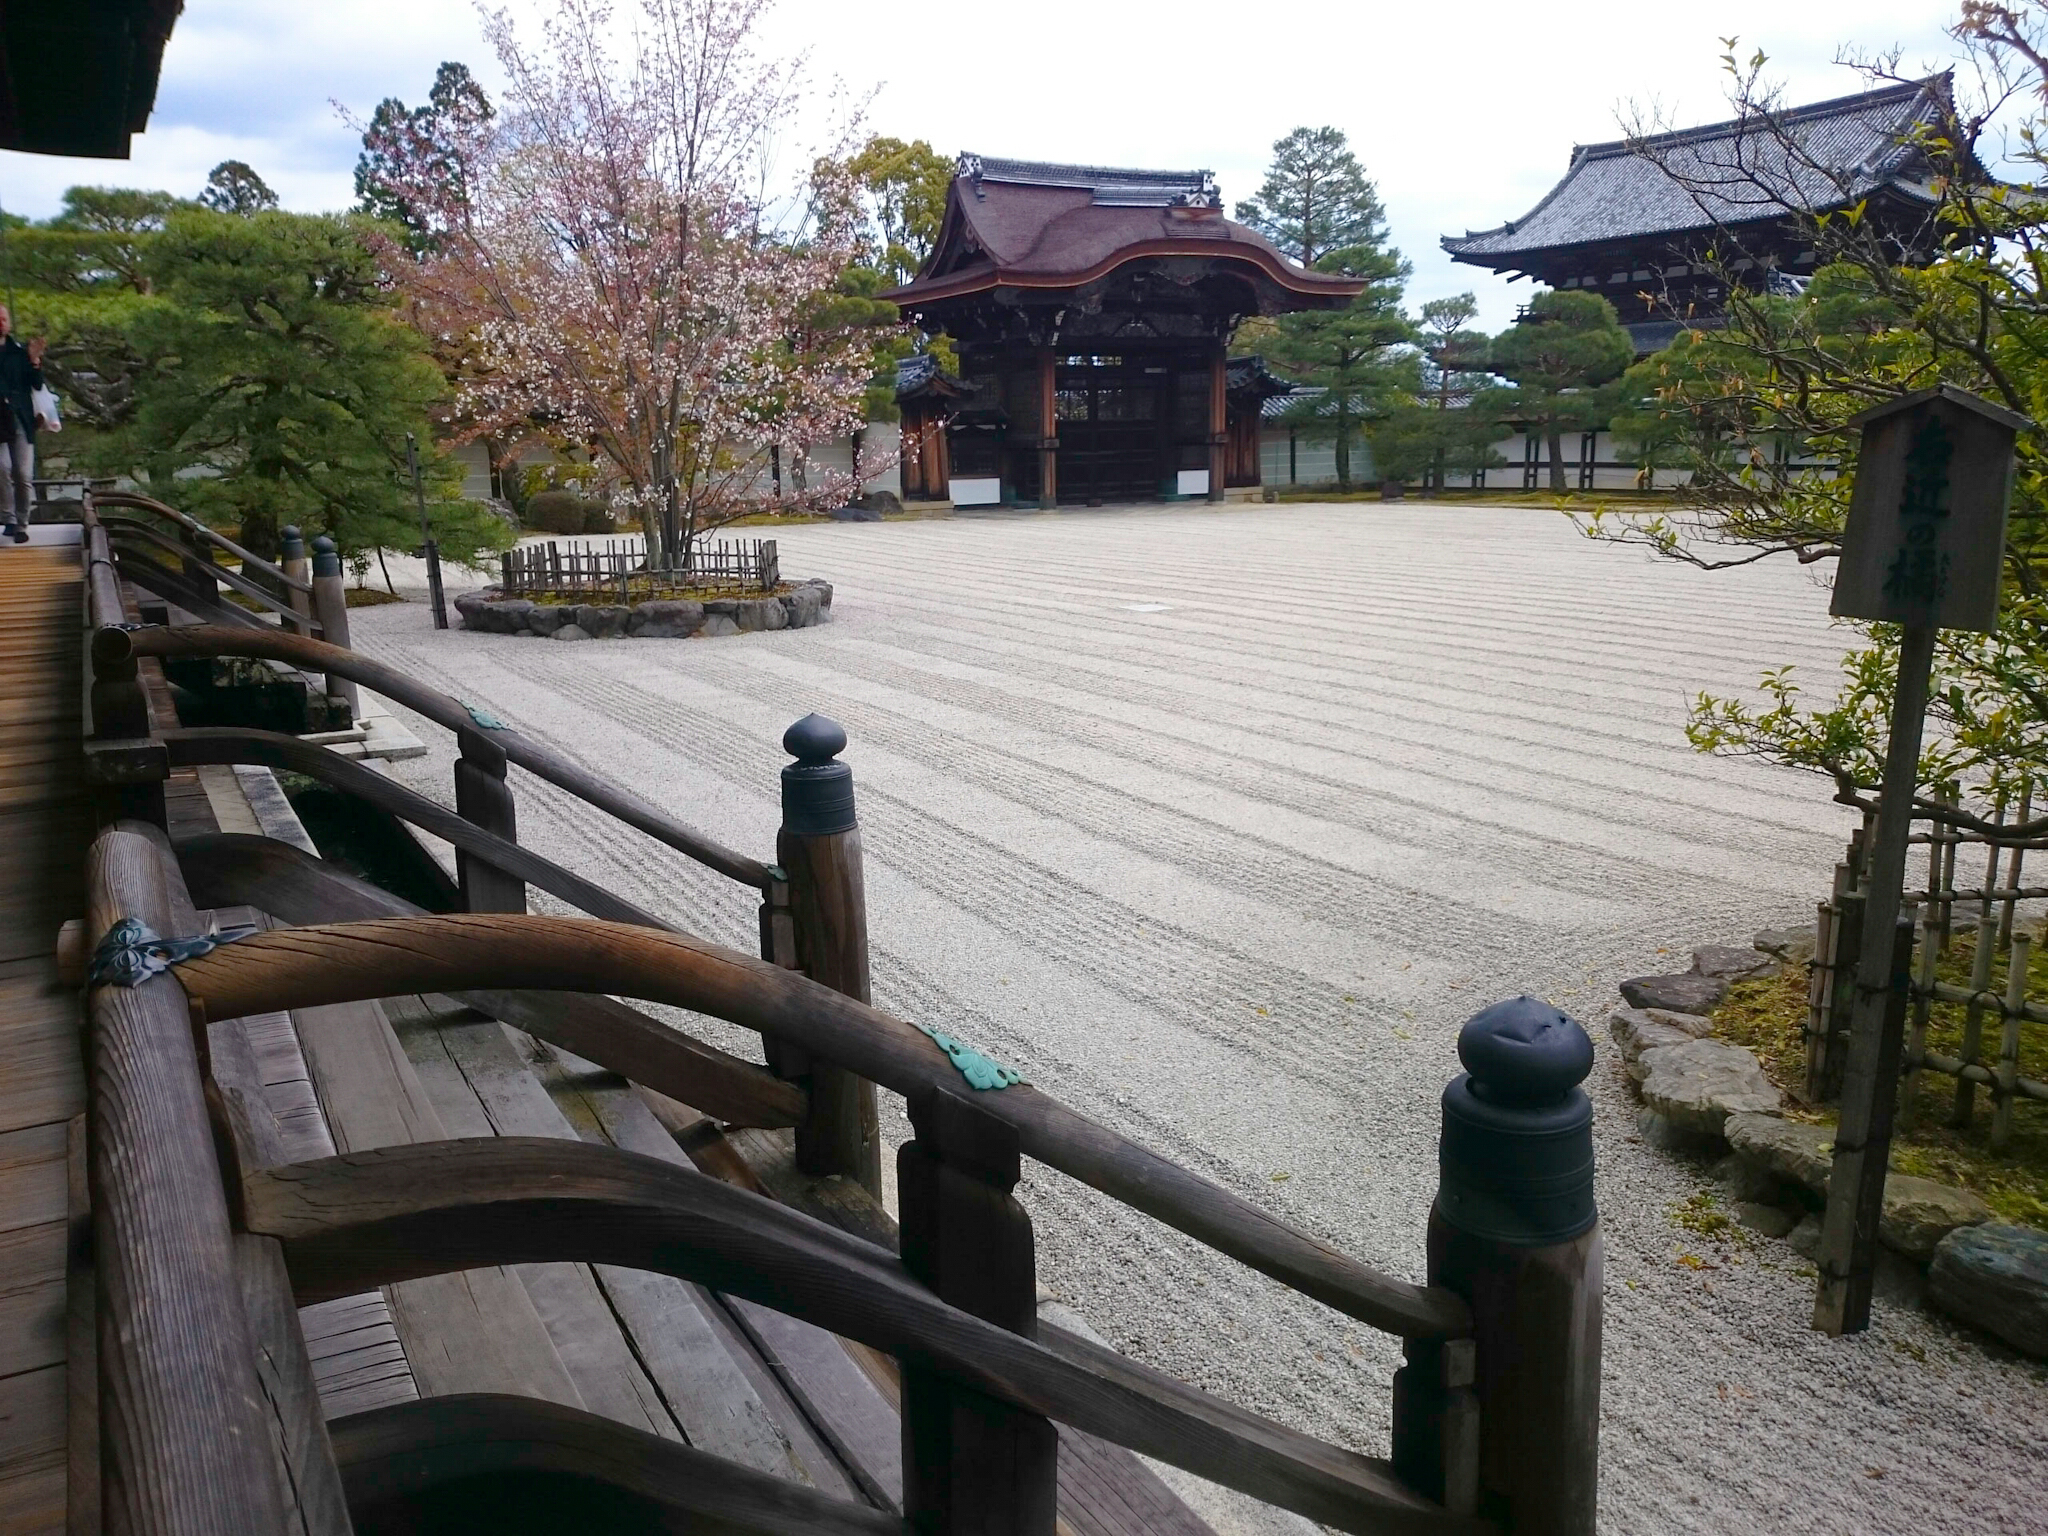 Ninna-ji temple in Kyoto